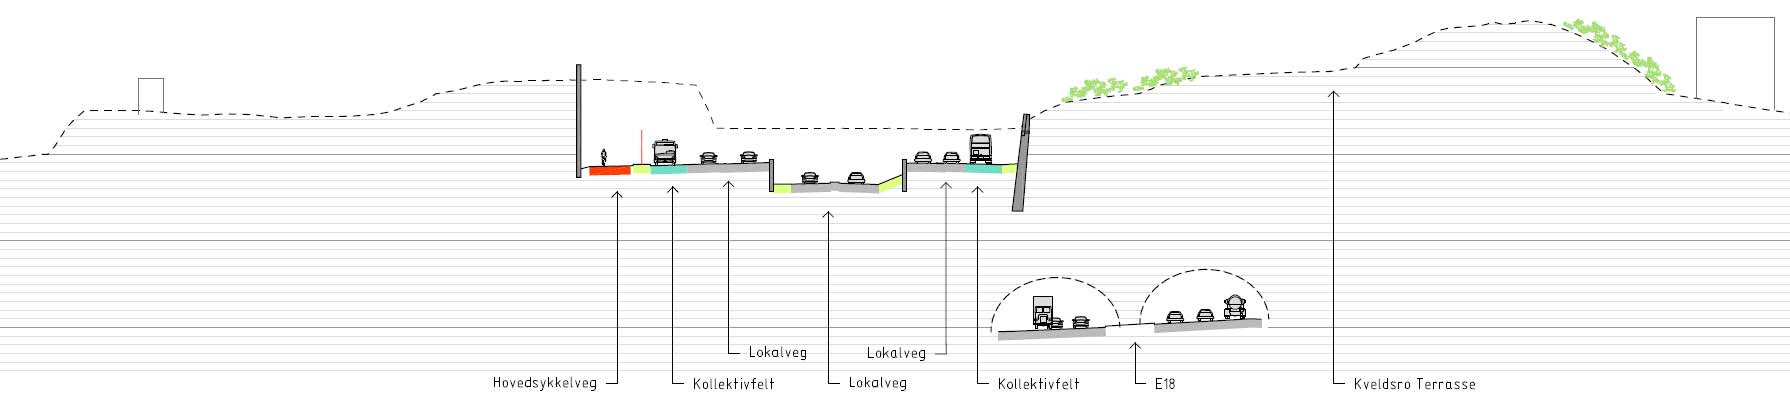 plan på grunn av redusert trafikk og hastighet.tiltakets utforming og betydelig trafikkreduksjon vil styrke Høvik som senterområde.